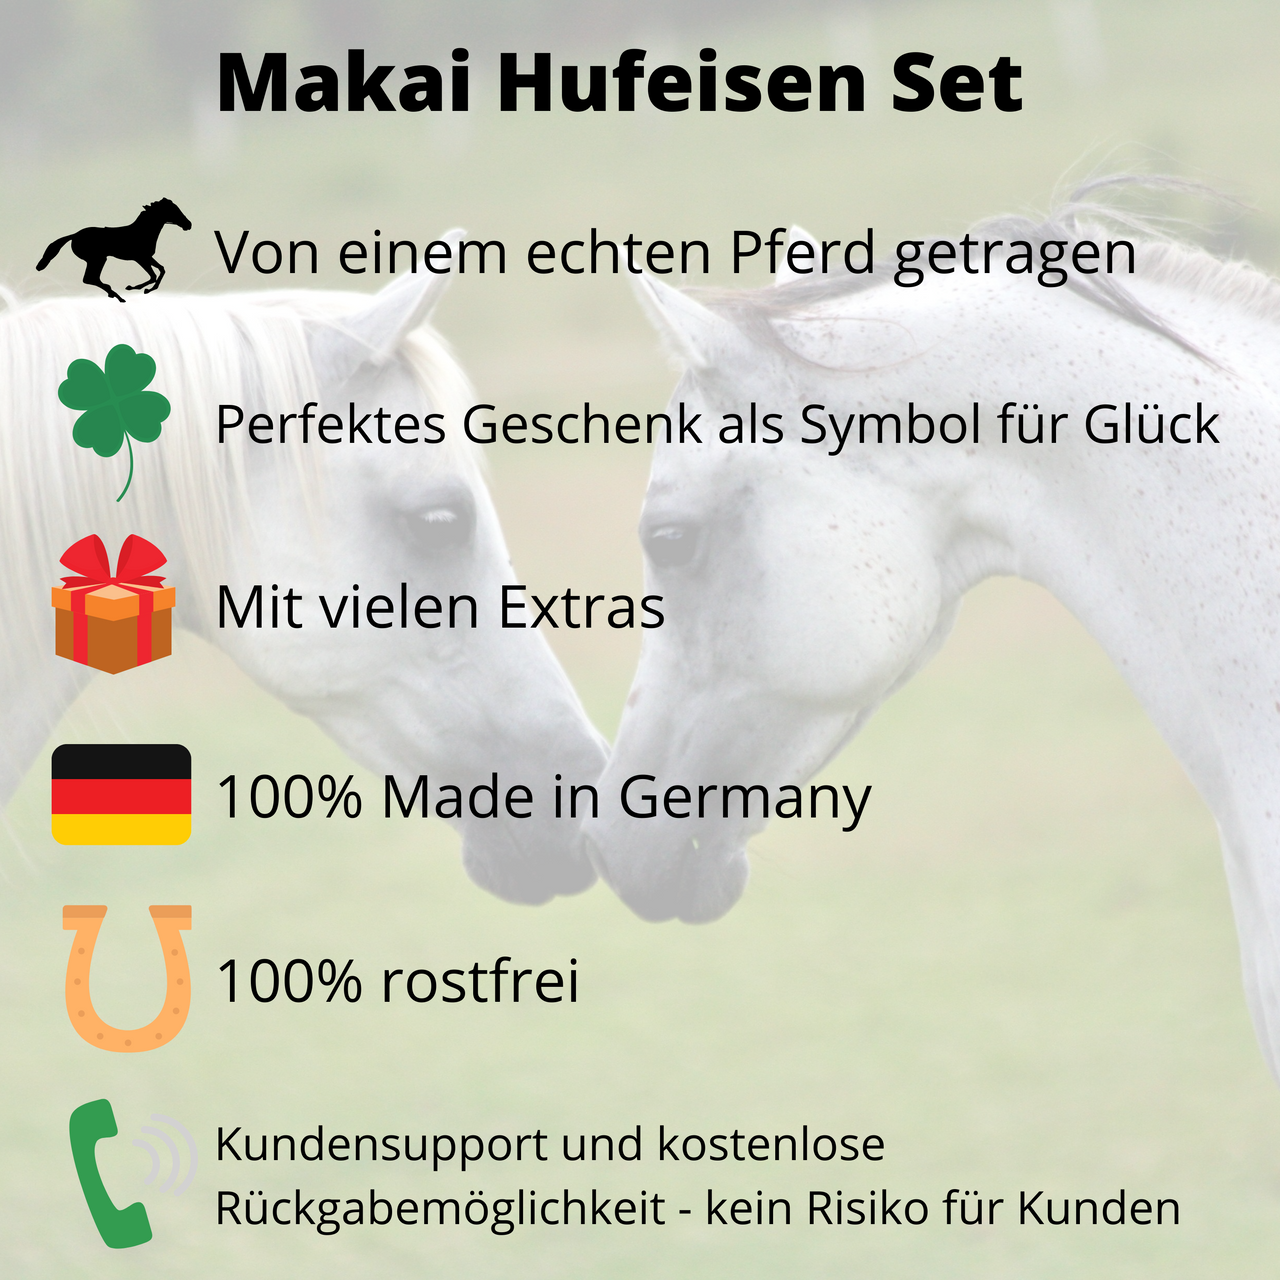 Makai Hufeisen Set von einem echten Pferd getragen, perfektes Geschenk als Symbol für Glück, mit vielen Extras, 100% Made in Germany, 100% rostfrei, Kundensupport und kostenlose Rückgabe.